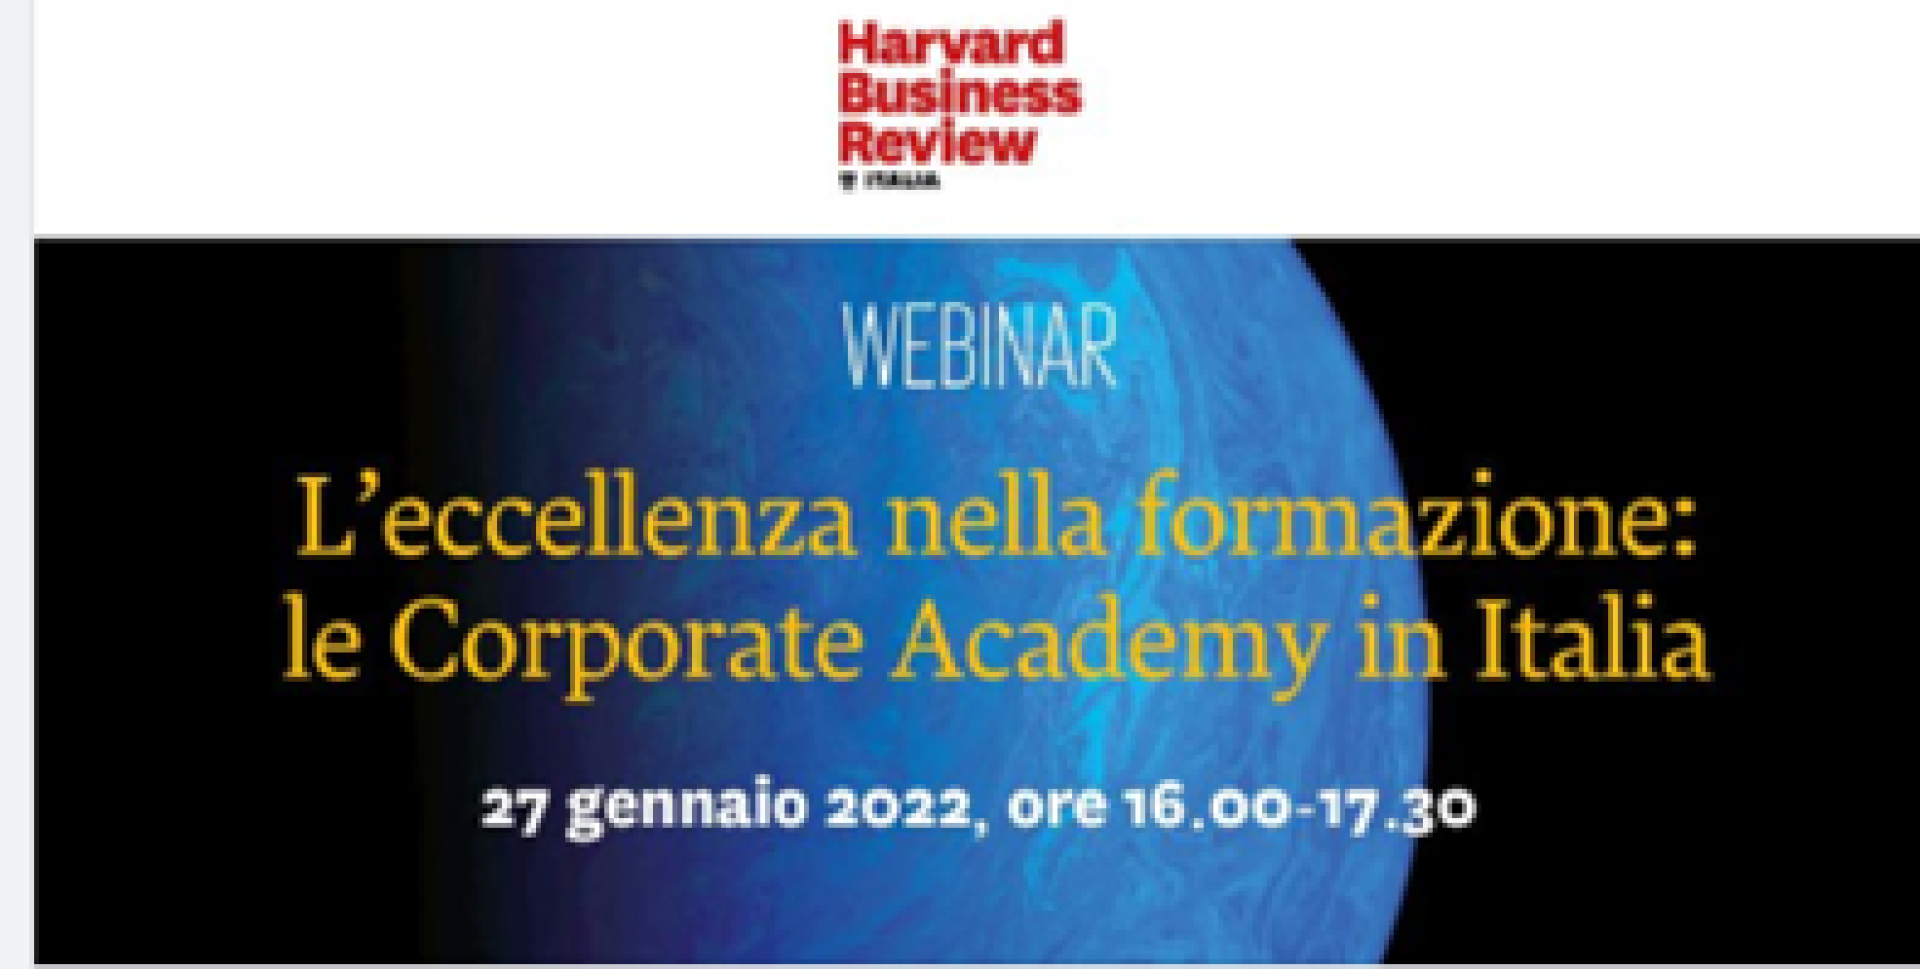 L'eccellenza nella formazione: Le Corporate Academy in Italia